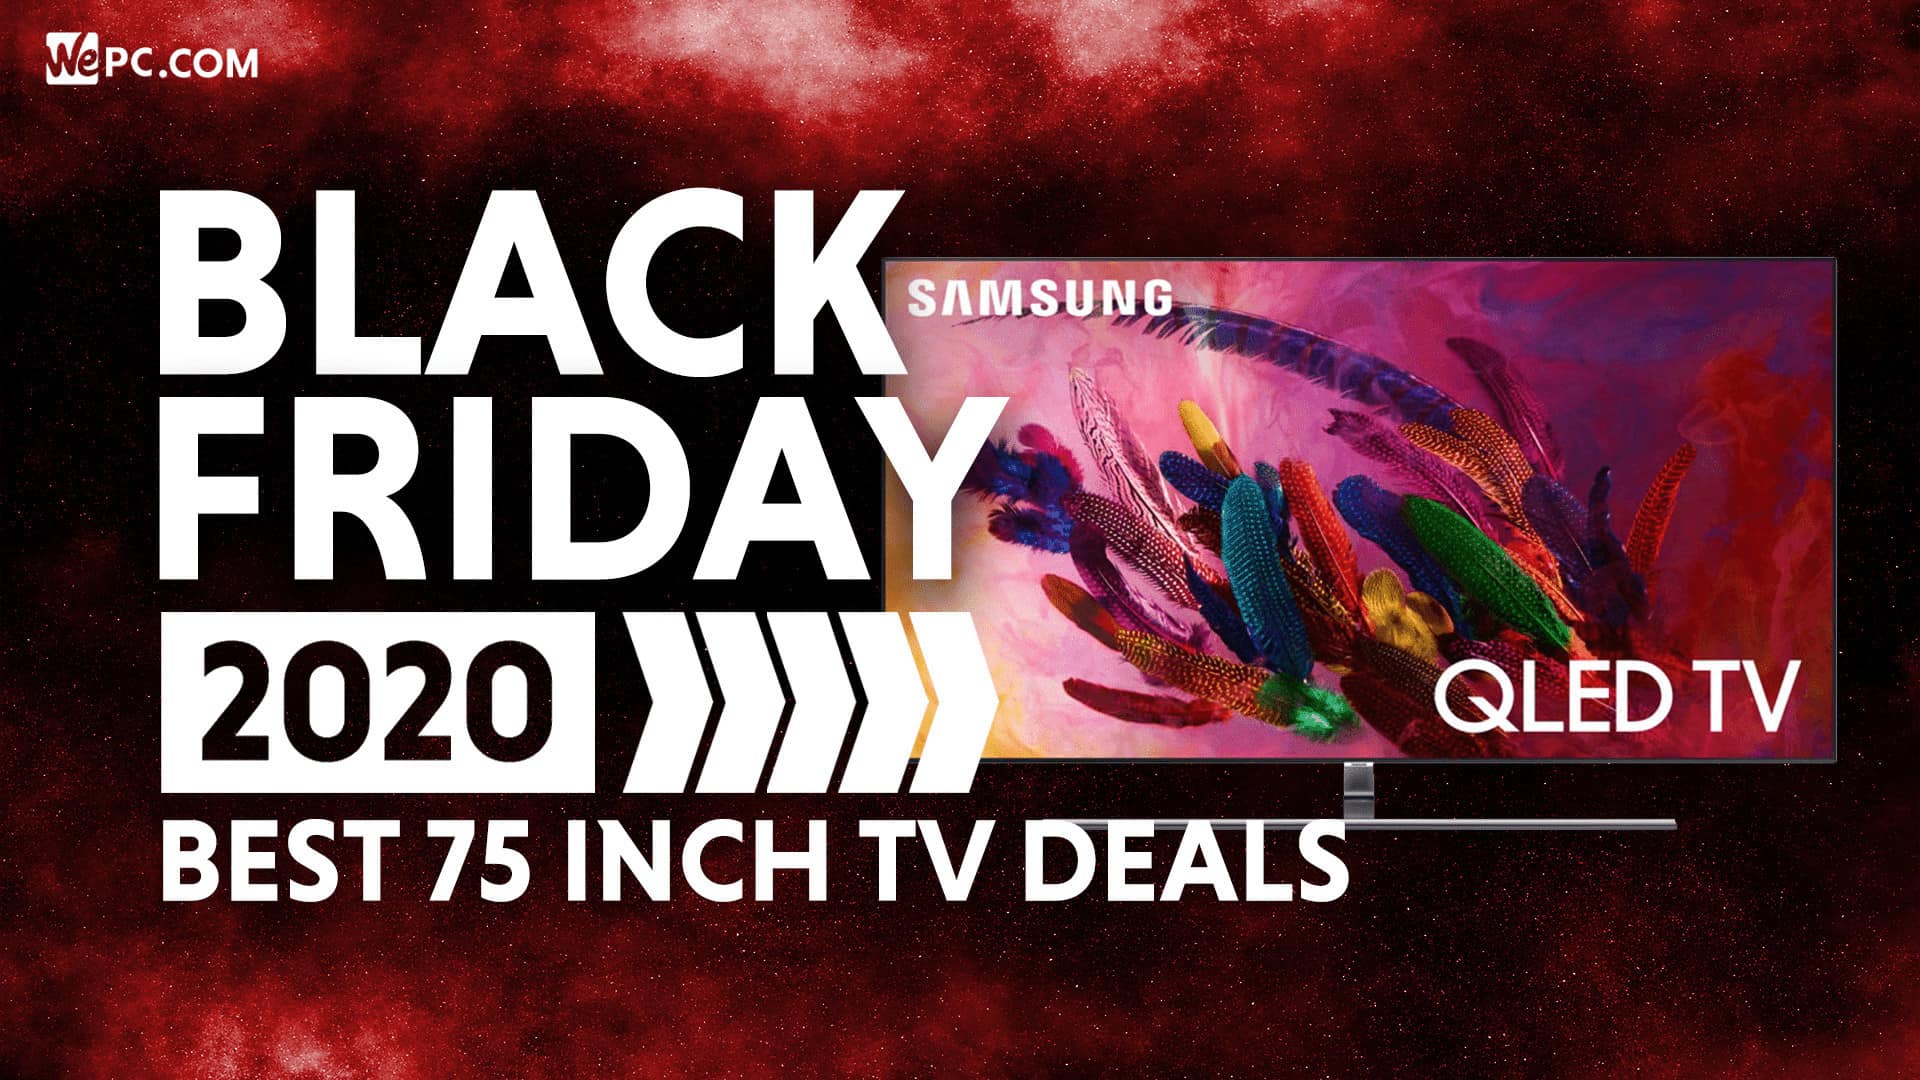 Best Black Friday 75 Inch TV Deals WePC